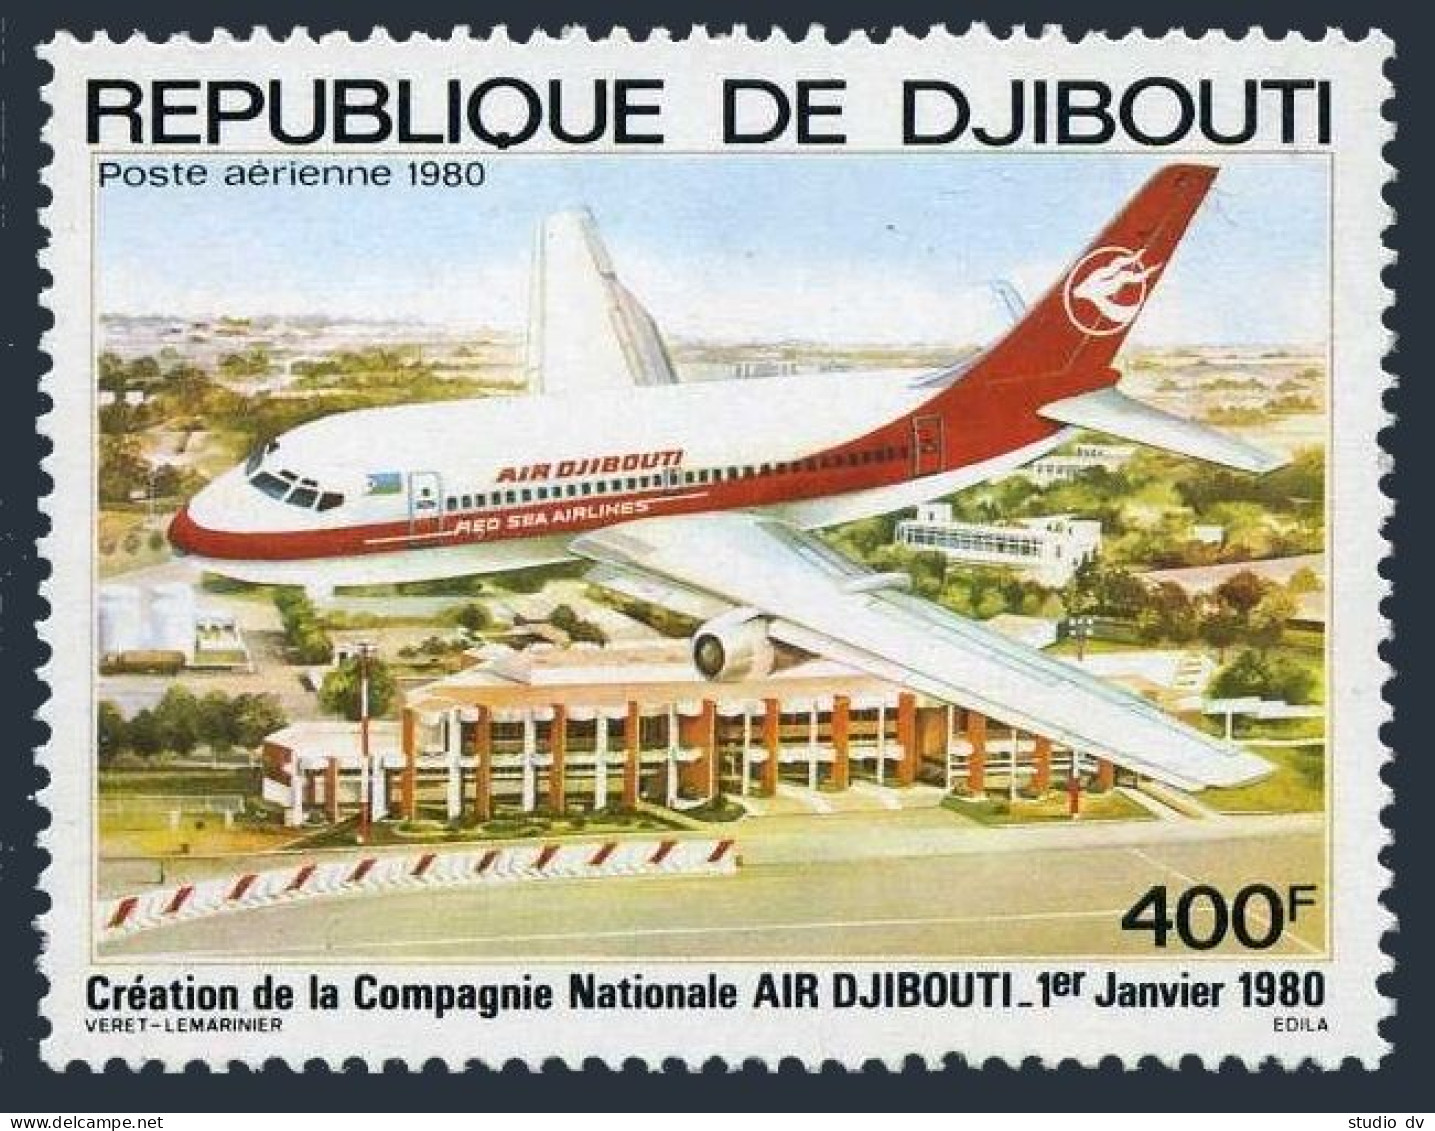 Djibouti C132,MNH.Michel 270. Air Djibouti,1st Ann.1980.Plane. - Djibouti (1977-...)